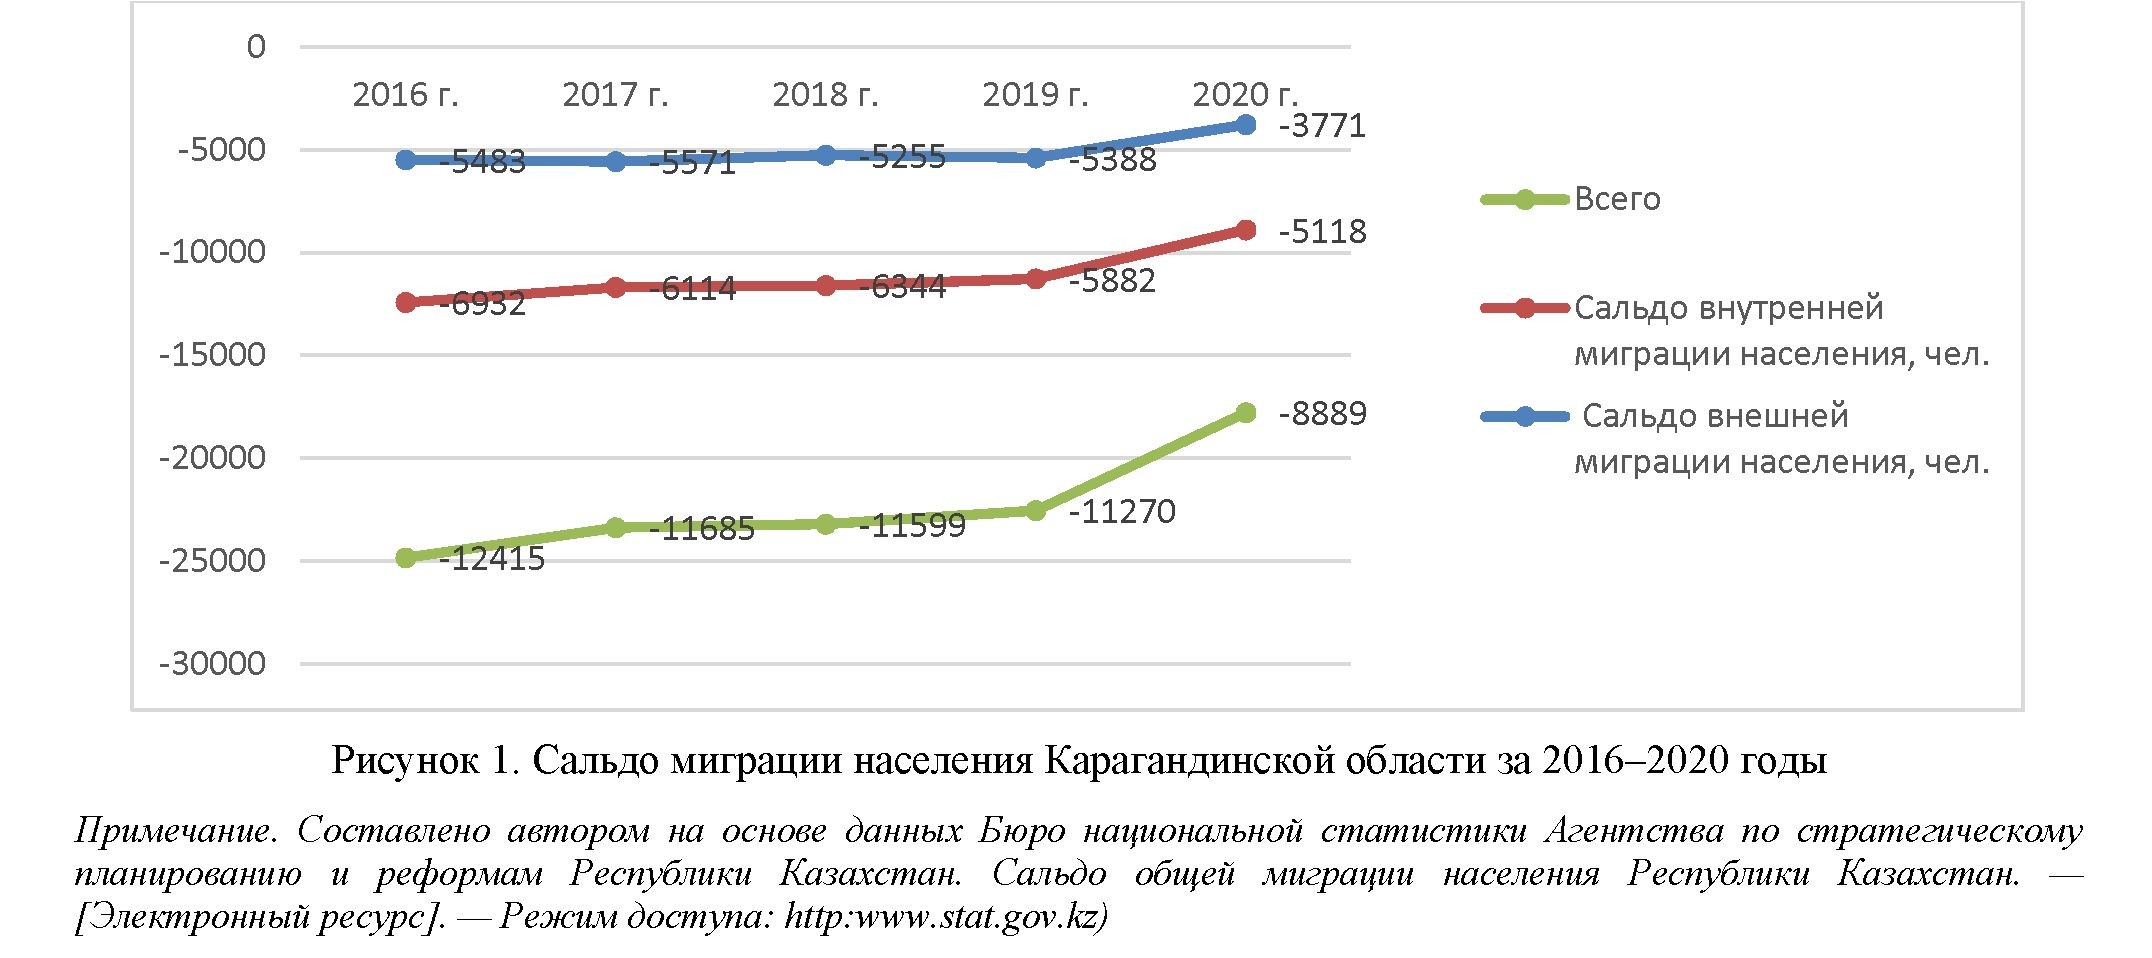 Влияние заработной платы на миграцию населения Карагандинской области